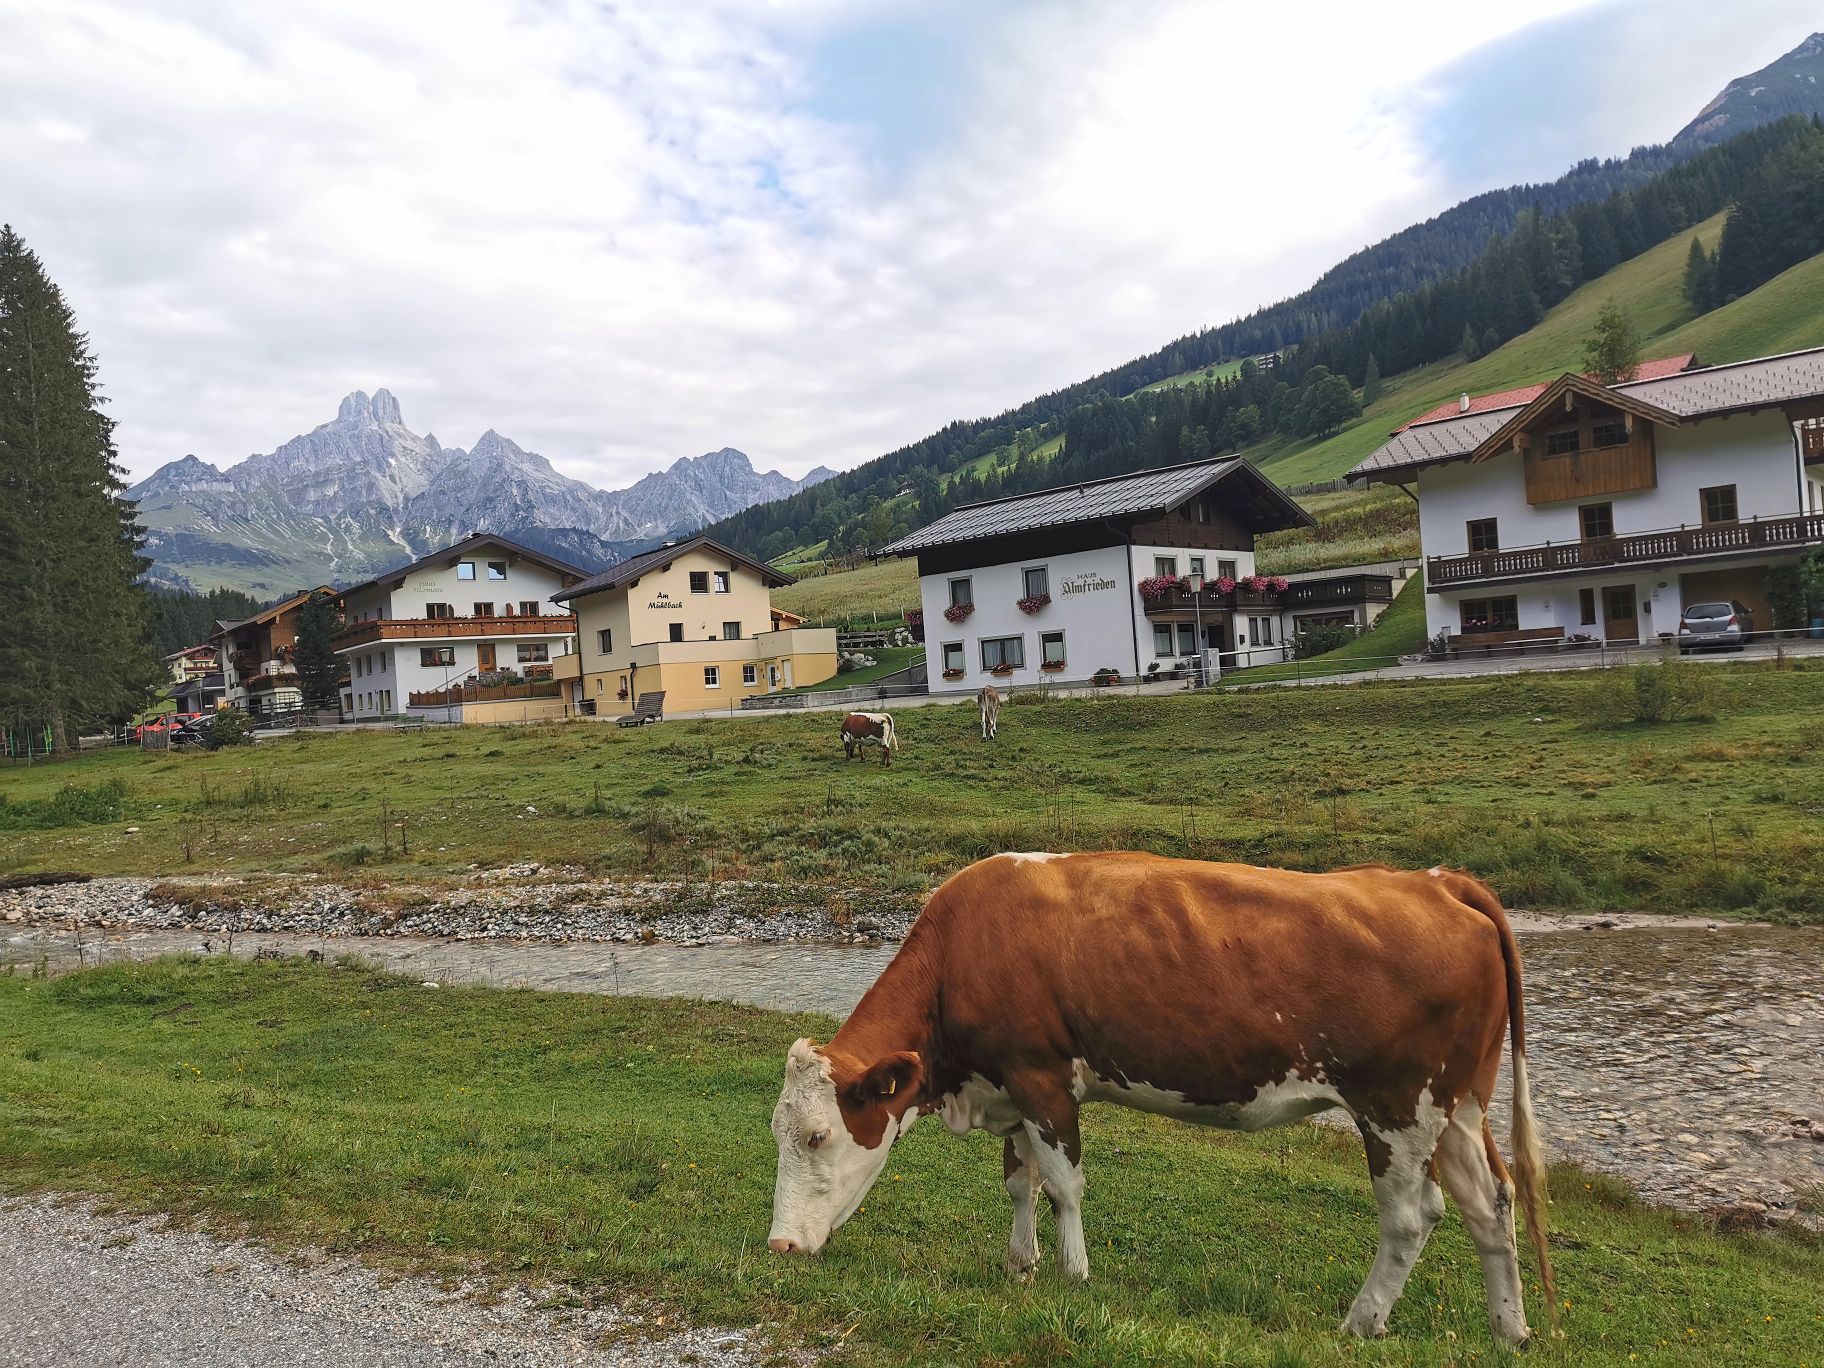 每个湖边小镇都是一幅画 来了不想走 超级羡慕阿尔卑斯山脚的牛🐂   喝着纯天然的矿泉水 吃着天然的牧